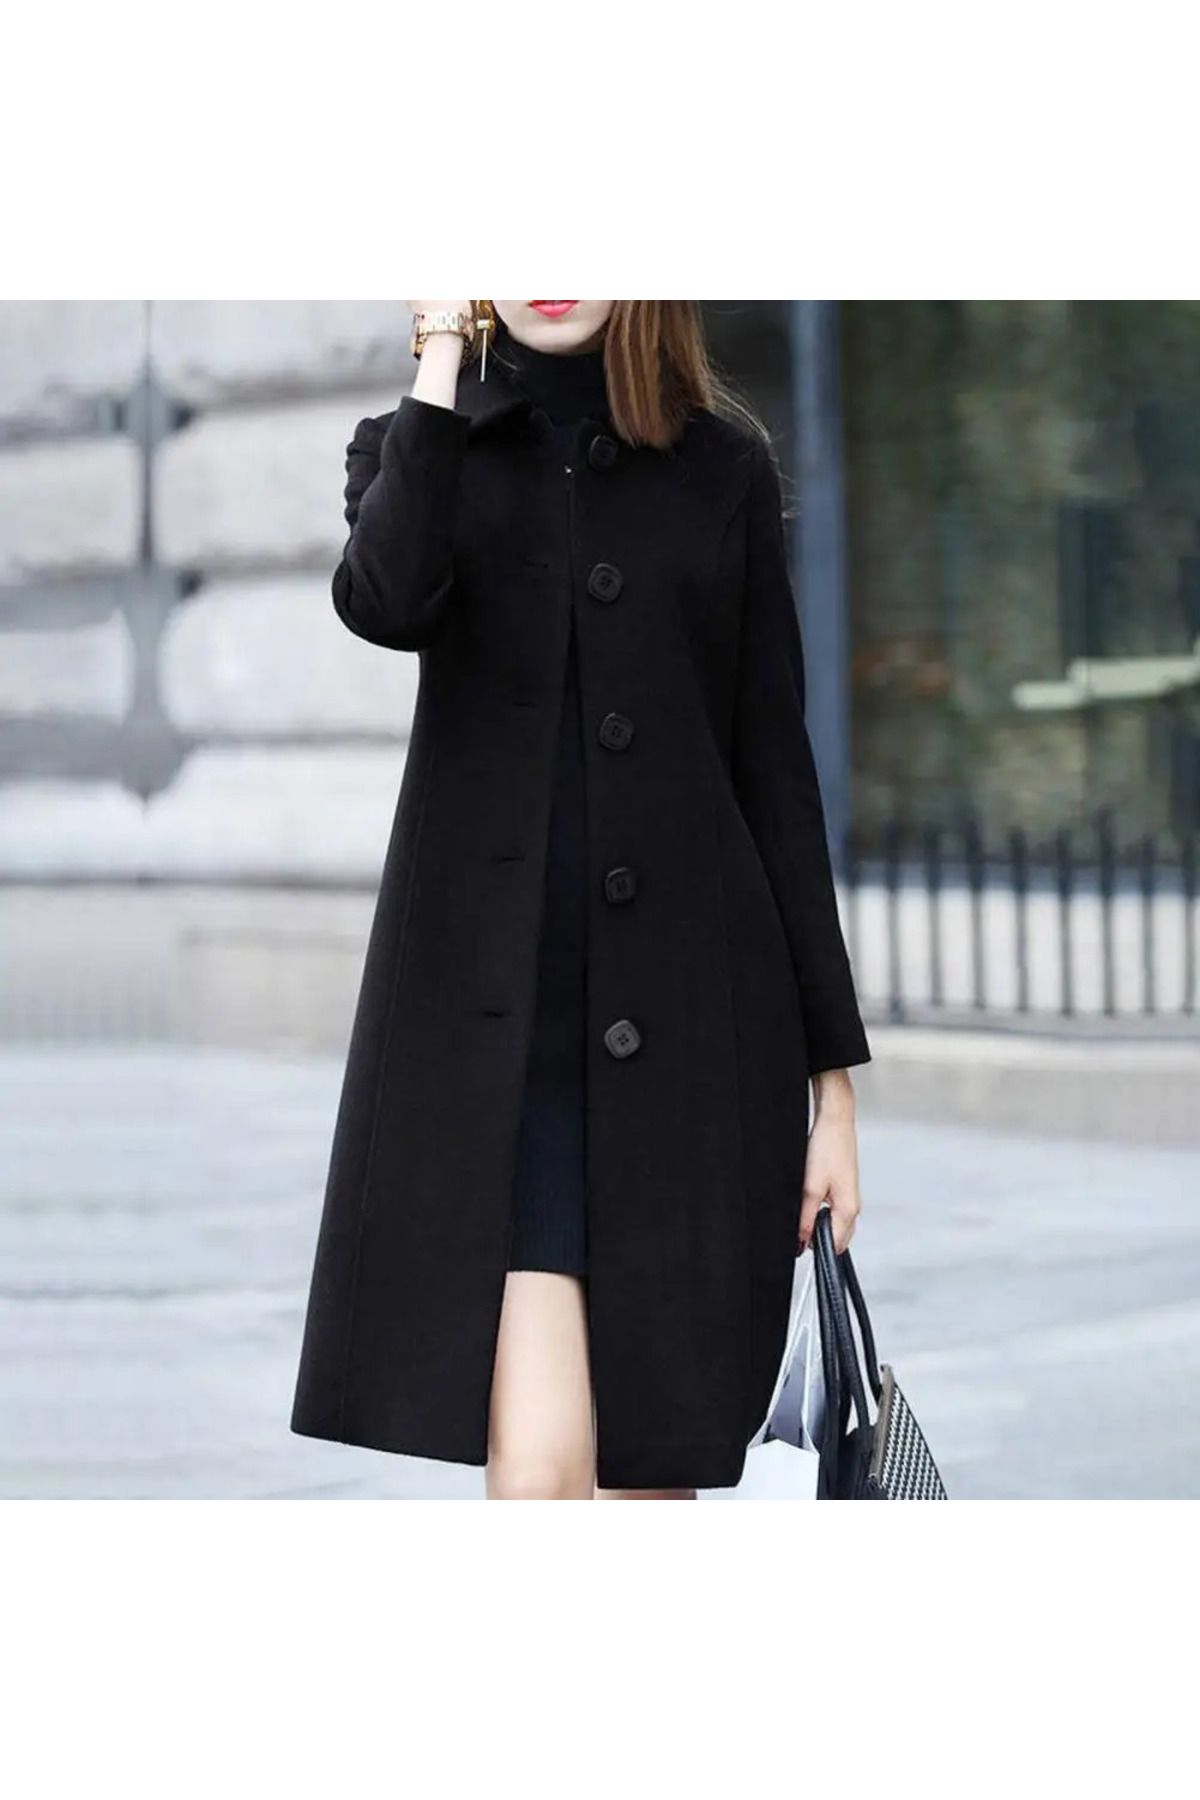 NeednStore Kadın Siyah Renkli Zarif Yaka Yünlü Uzun Kaşe Palto Kaban Mont